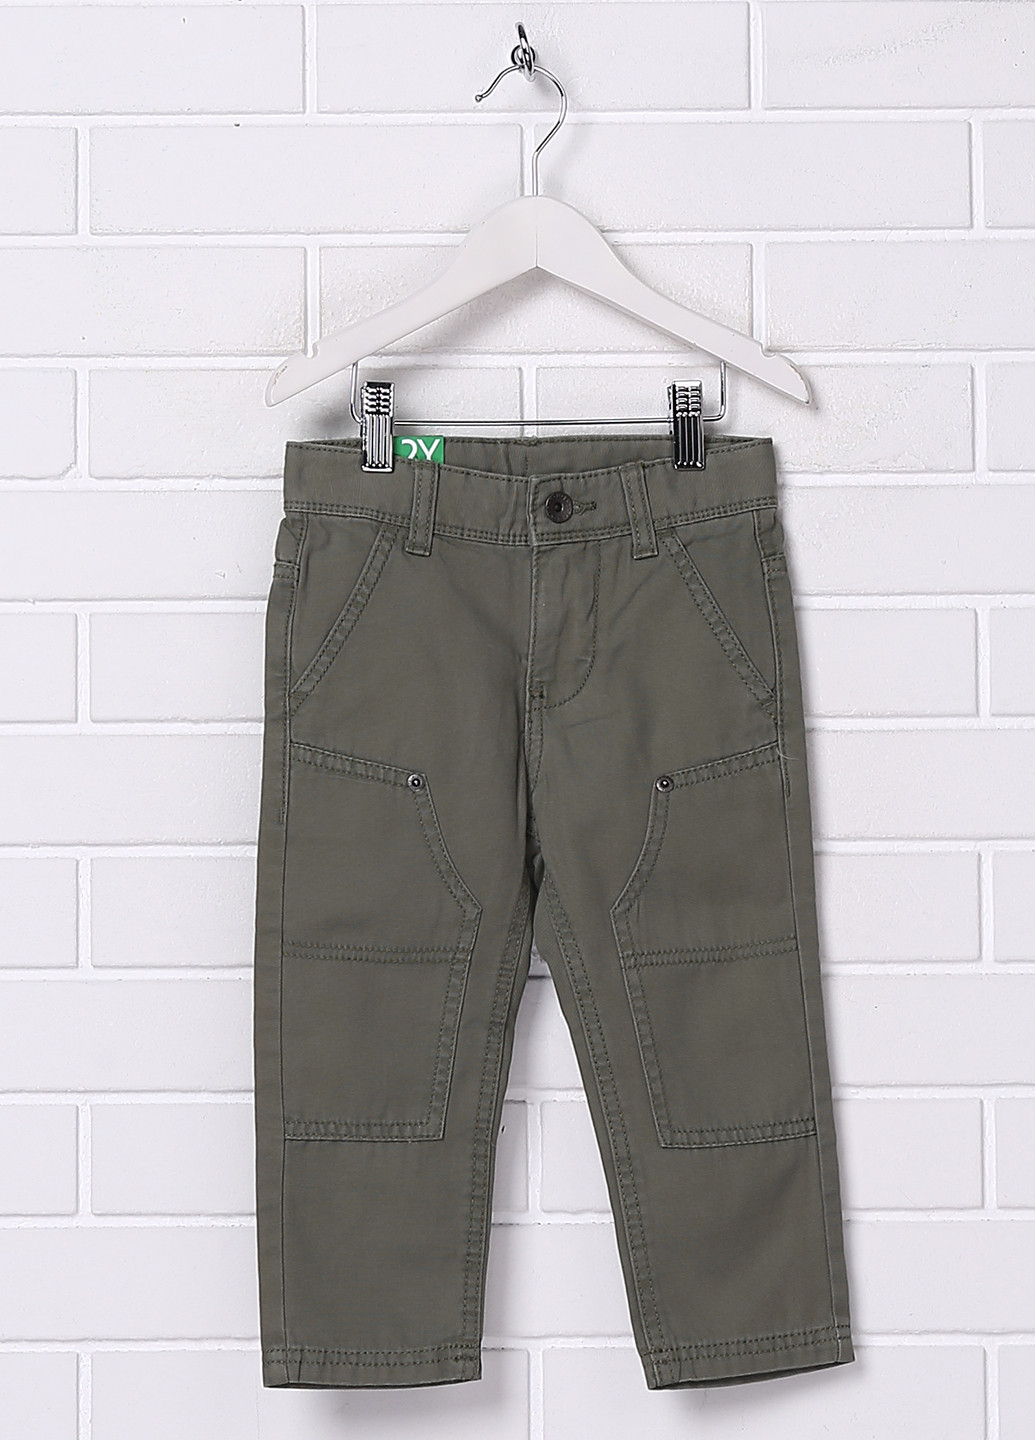 Оливково-зеленые демисезонные джинсы United Colors of Benetton